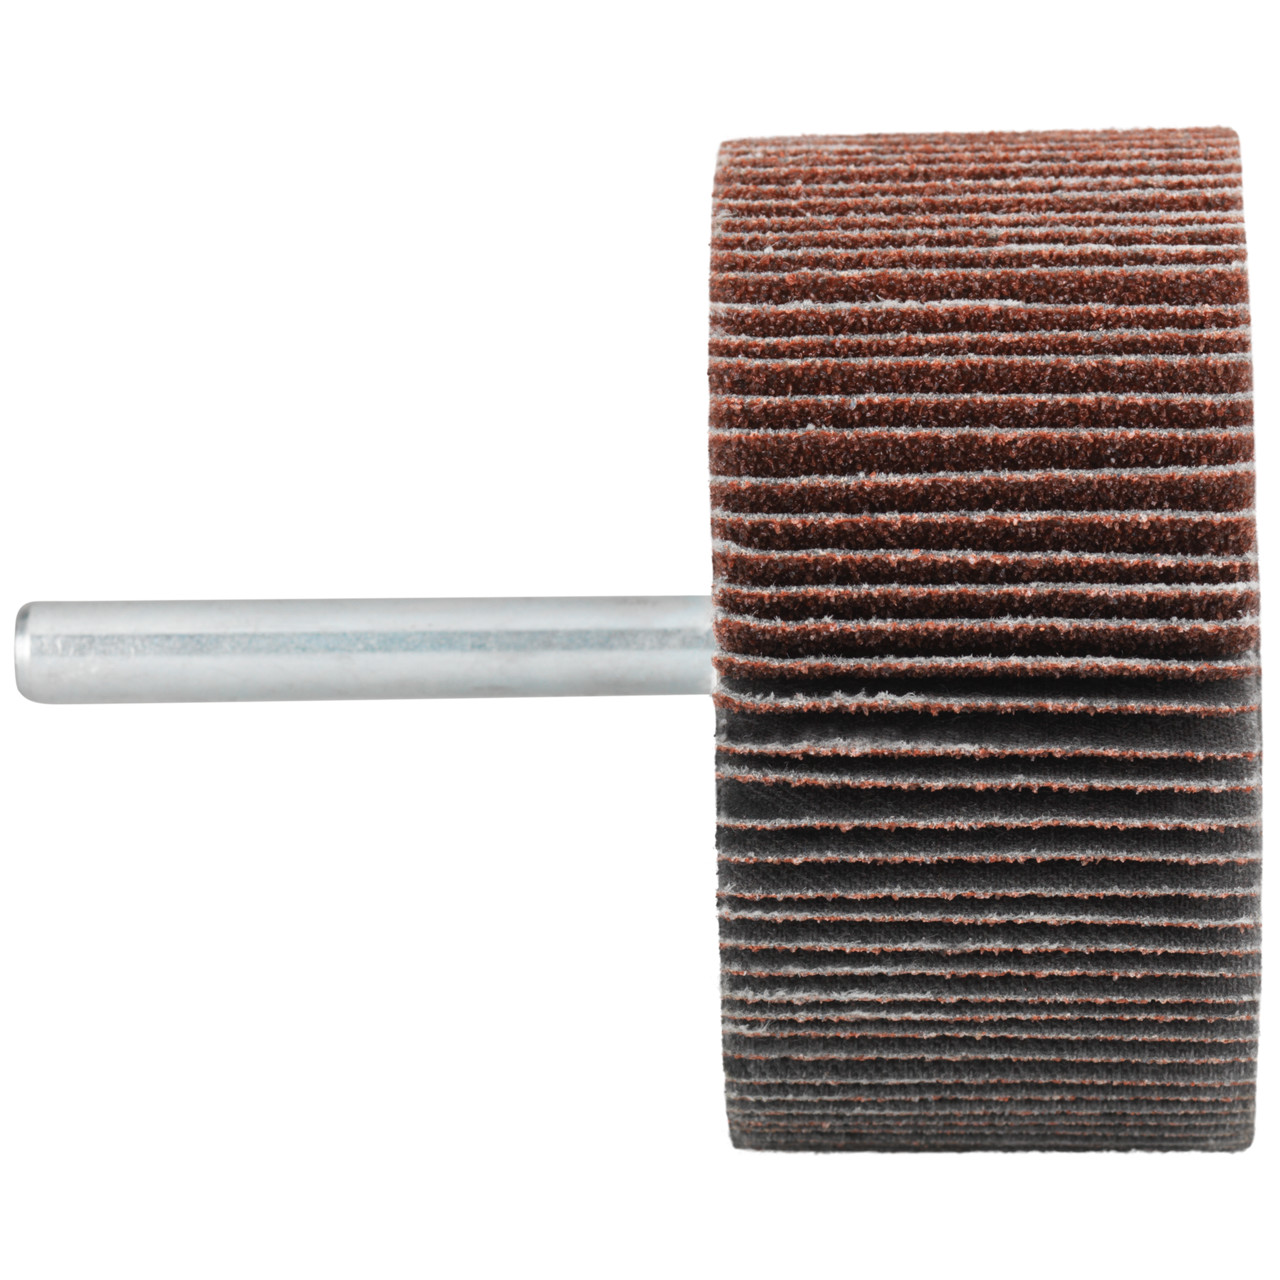 Tyrolit A-P01 C X Pennen DxD 40x20 Voor staal, roestvast staal en non-ferrometalen, P240, vorm: 52LA, Art. 816920